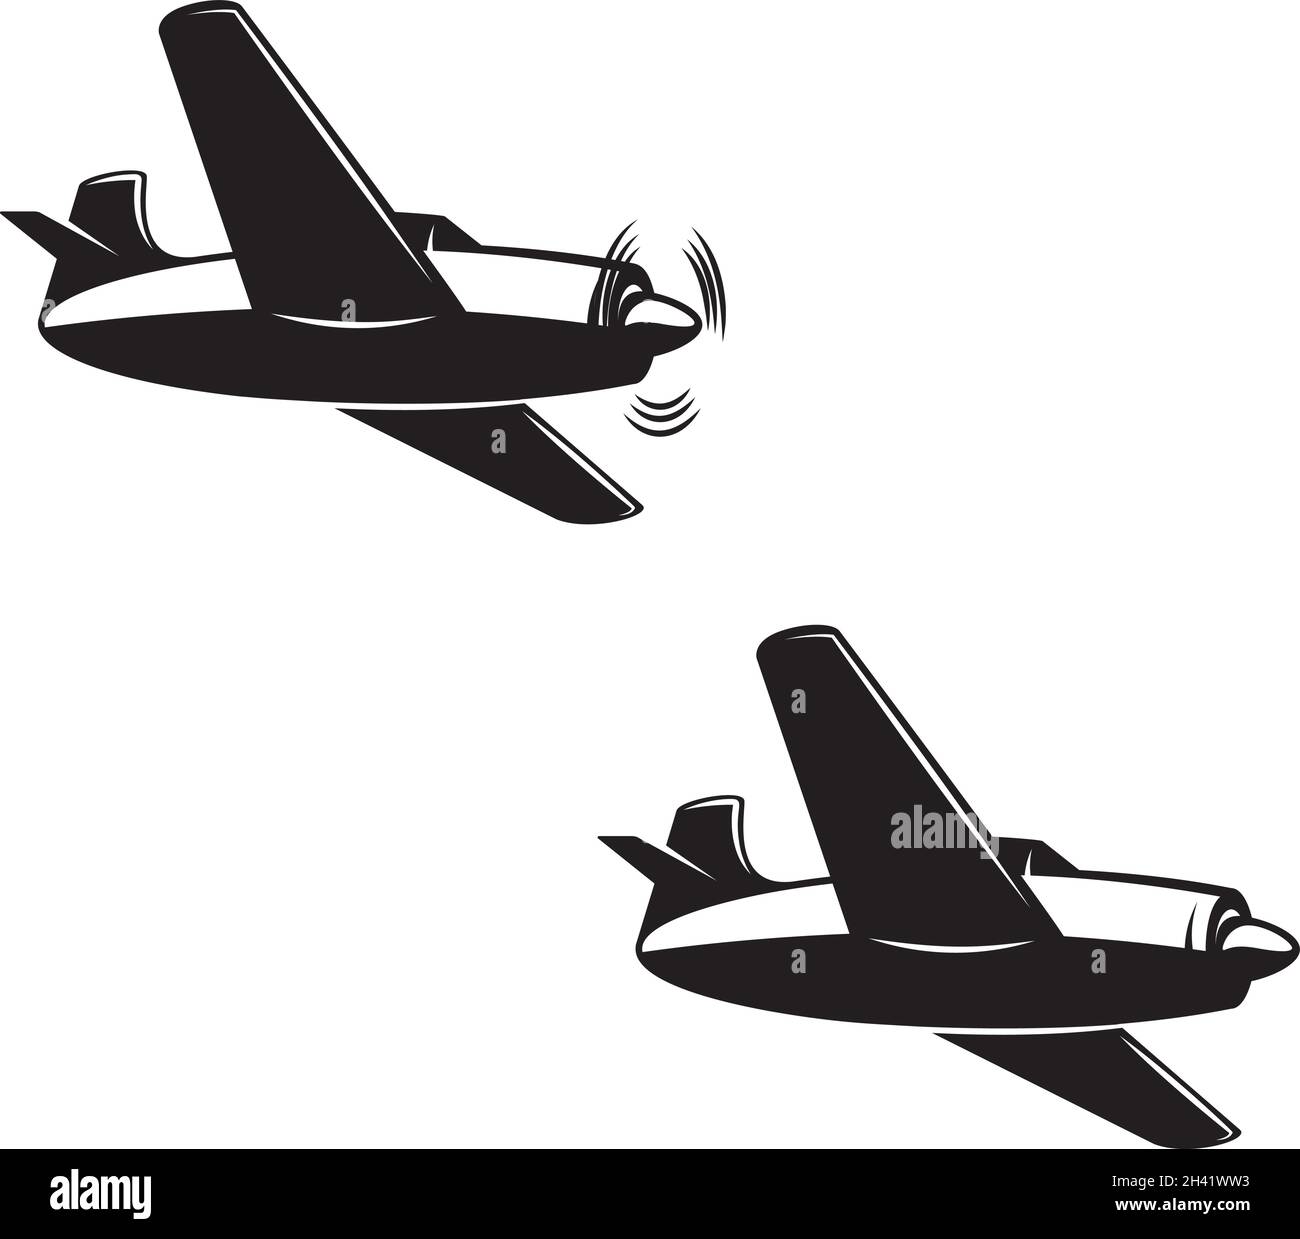 Illustration of retro airplane. Design element for logo, label, sign, emblem. Vector illustration Stock Vector